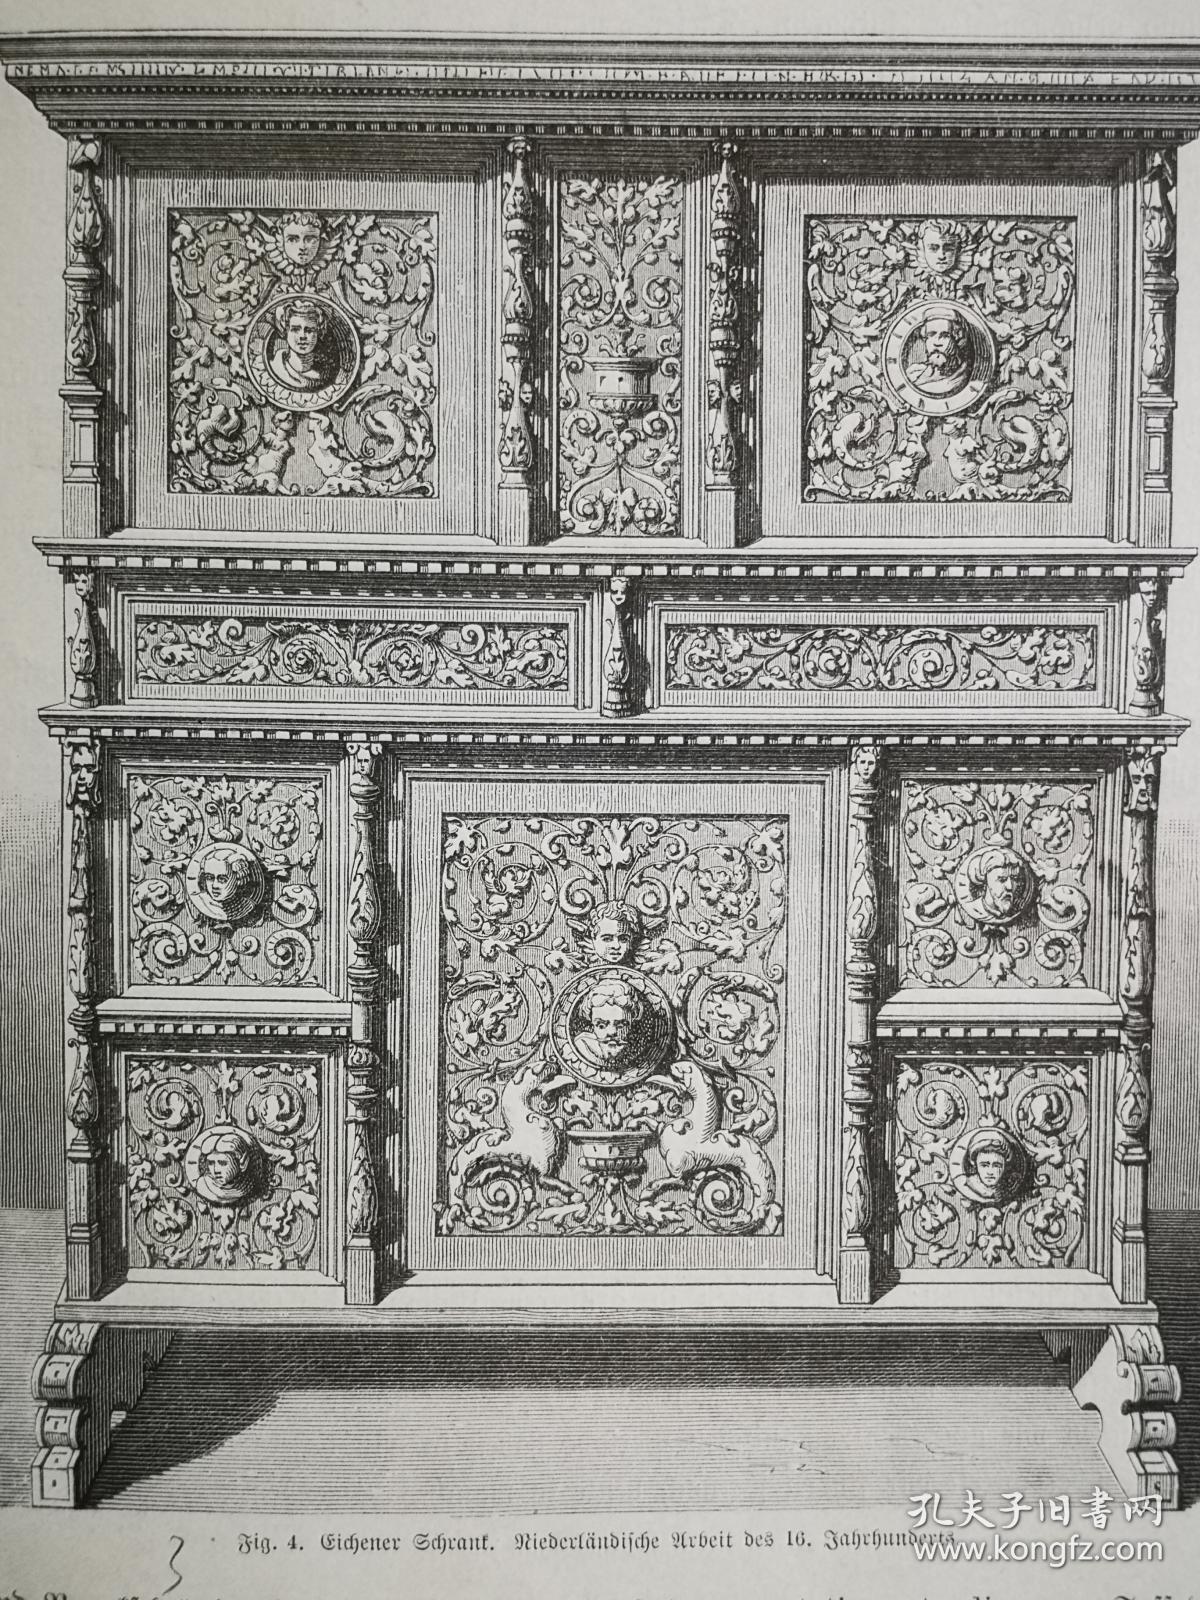 1884年木版画《柏林工艺美术博物馆的藏品--橡木橱柜.16世纪的荷兰作品eichener schrank. niederländische arbeit des 16.jahrhunderts 》尺寸27.5*19.2厘米，反面有字